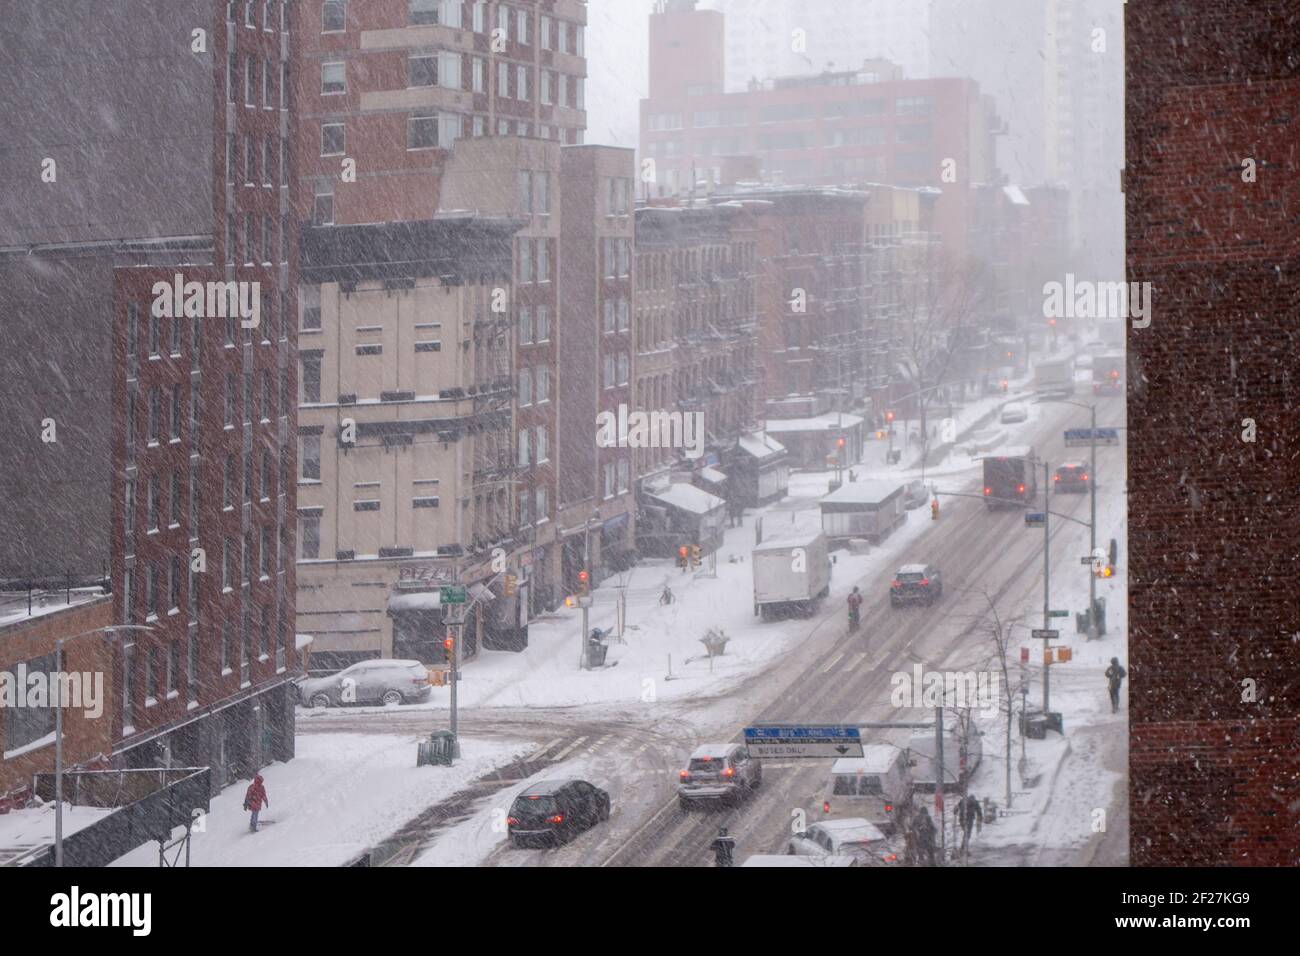 Natale Bianco inverno neve giorno nella grande mela nuovo york City manhattan edifici strade e passaggi pedonali intersezione ad alto angolo Foto Stock